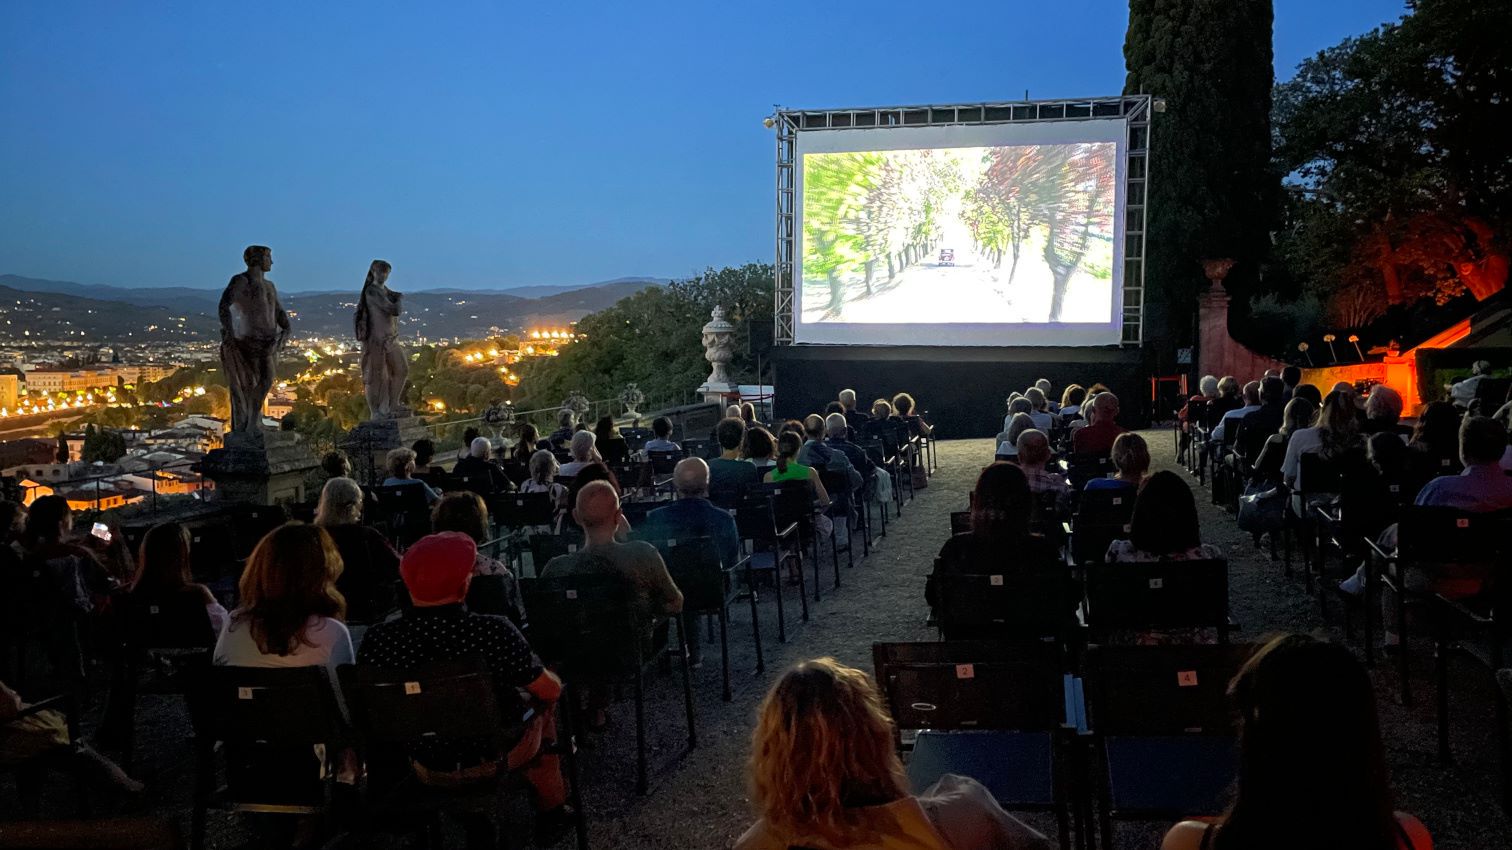 Torna “Cinema in villa”, l’arena estiva con vista panoramica su Firenze